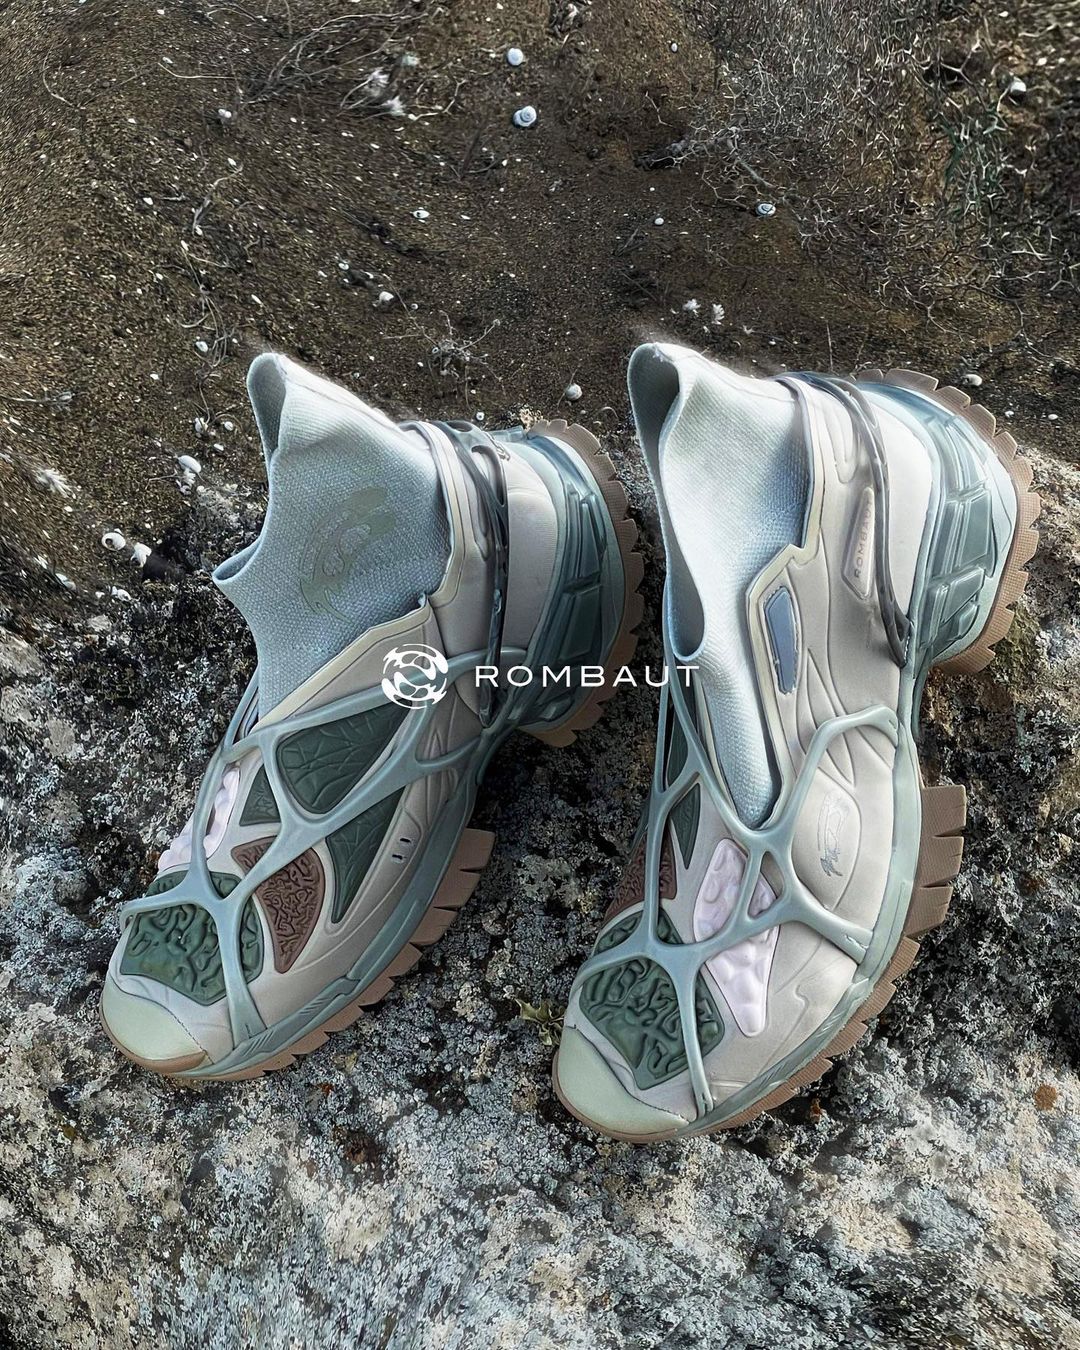 來自比利時的球鞋品牌 Rombaut 在這點上便做得算不錯，點進官網來看，材質的原料說明都有相當明確的介紹，例如從食品工業丟棄的果核果皮經過加工「變造」為皮革、使用藻類混合樹脂抵銷生產 EVA 緩震素材的傳統製程，皆是實現對環境的保育。